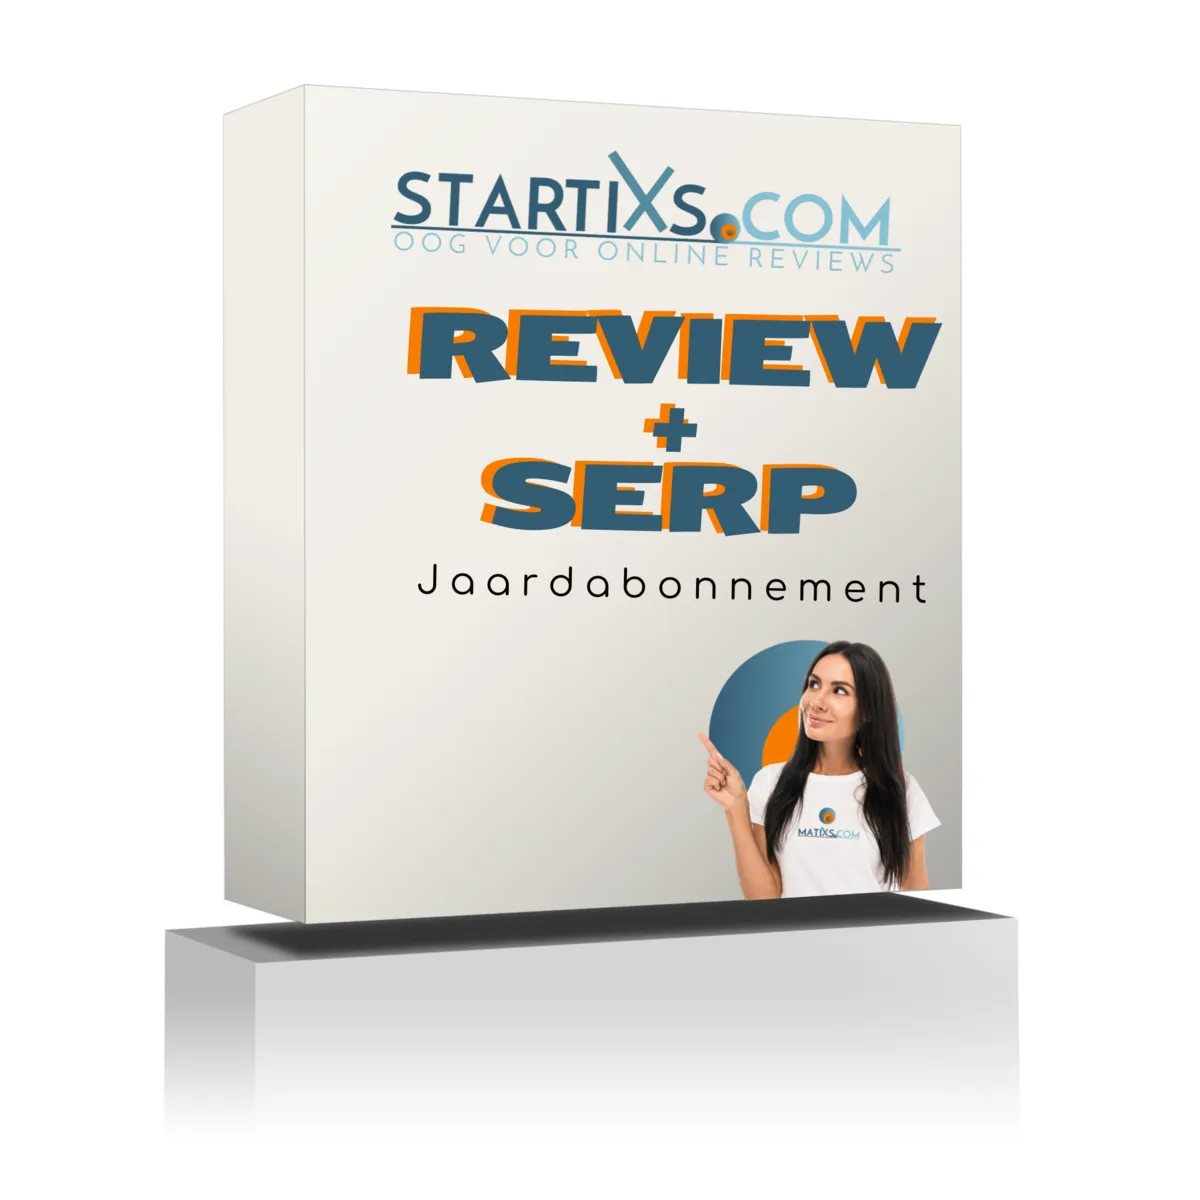 Startixs - Review + Serp Software